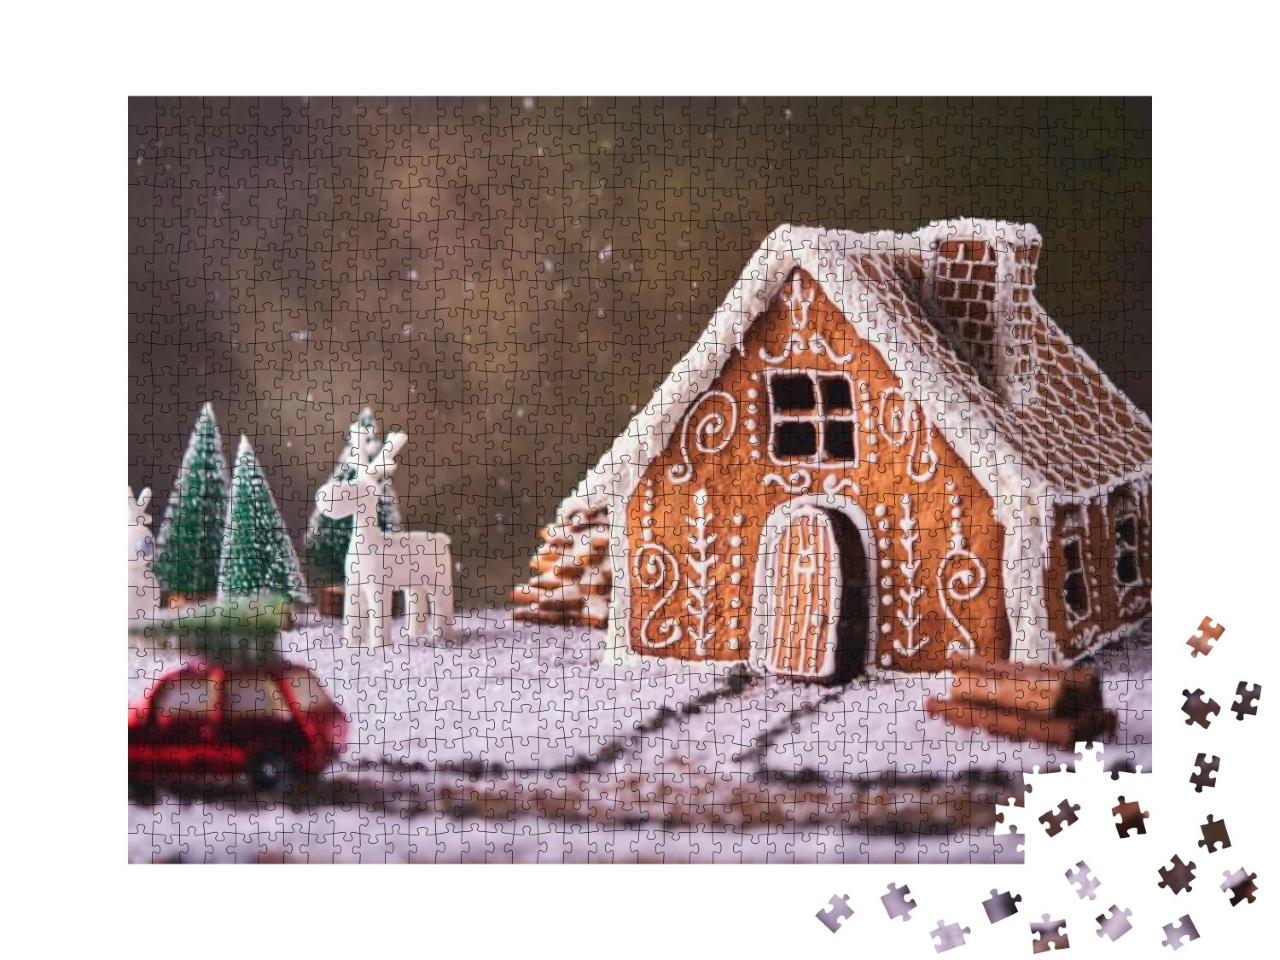 Puzzle 1000 Teile „Kleines Lebkuchenhaus in einer Weihnachtslandschaft“